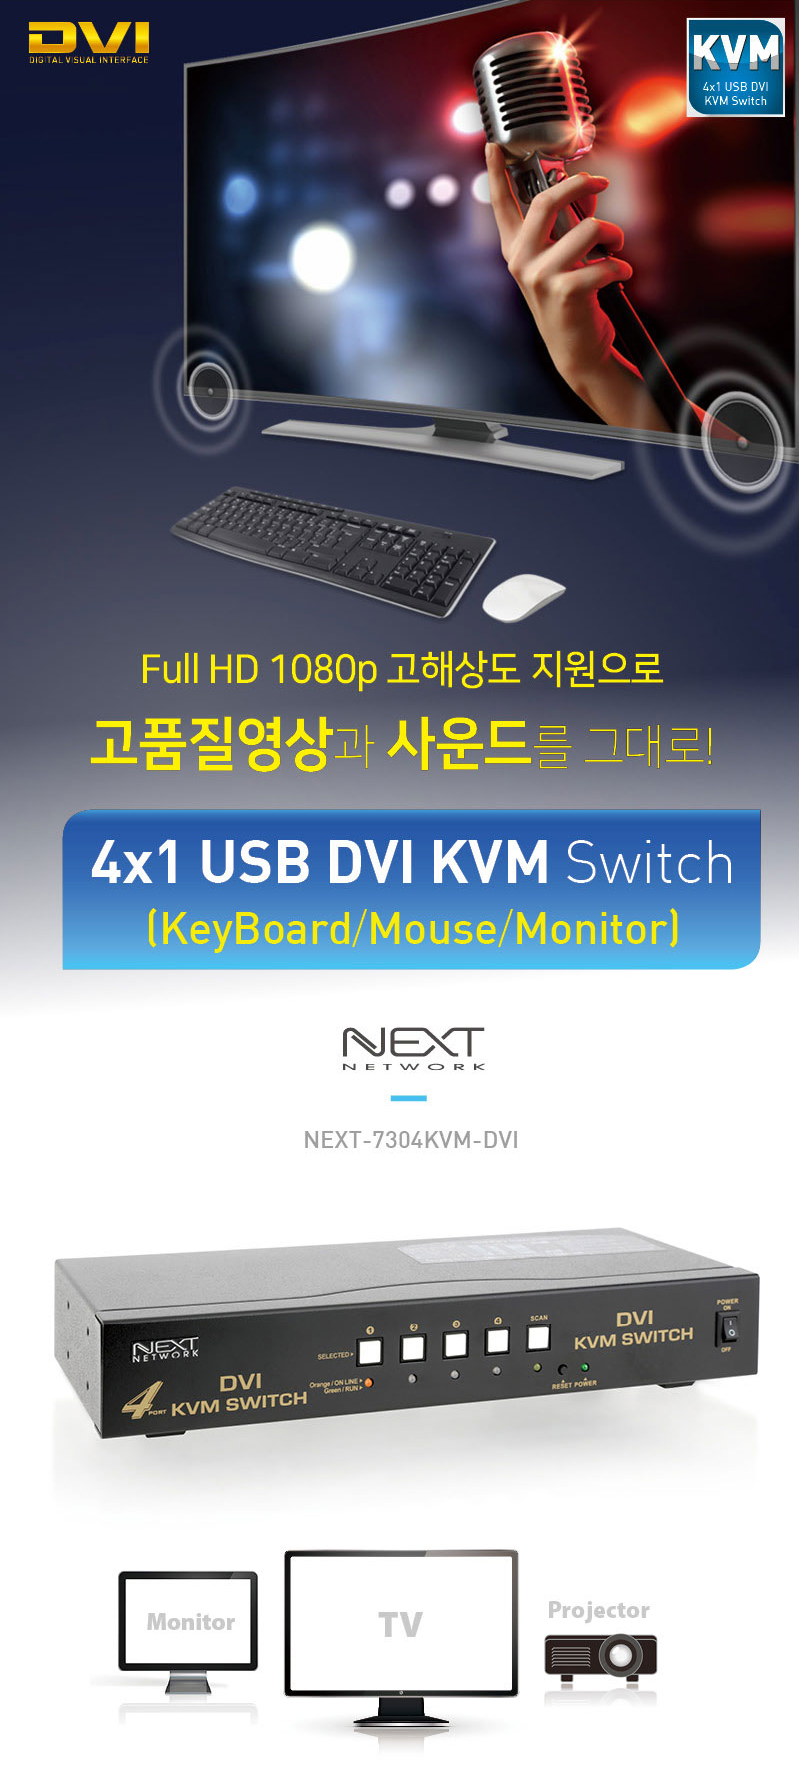 NEXT-7304KVM-DVI_5_115621.jpg